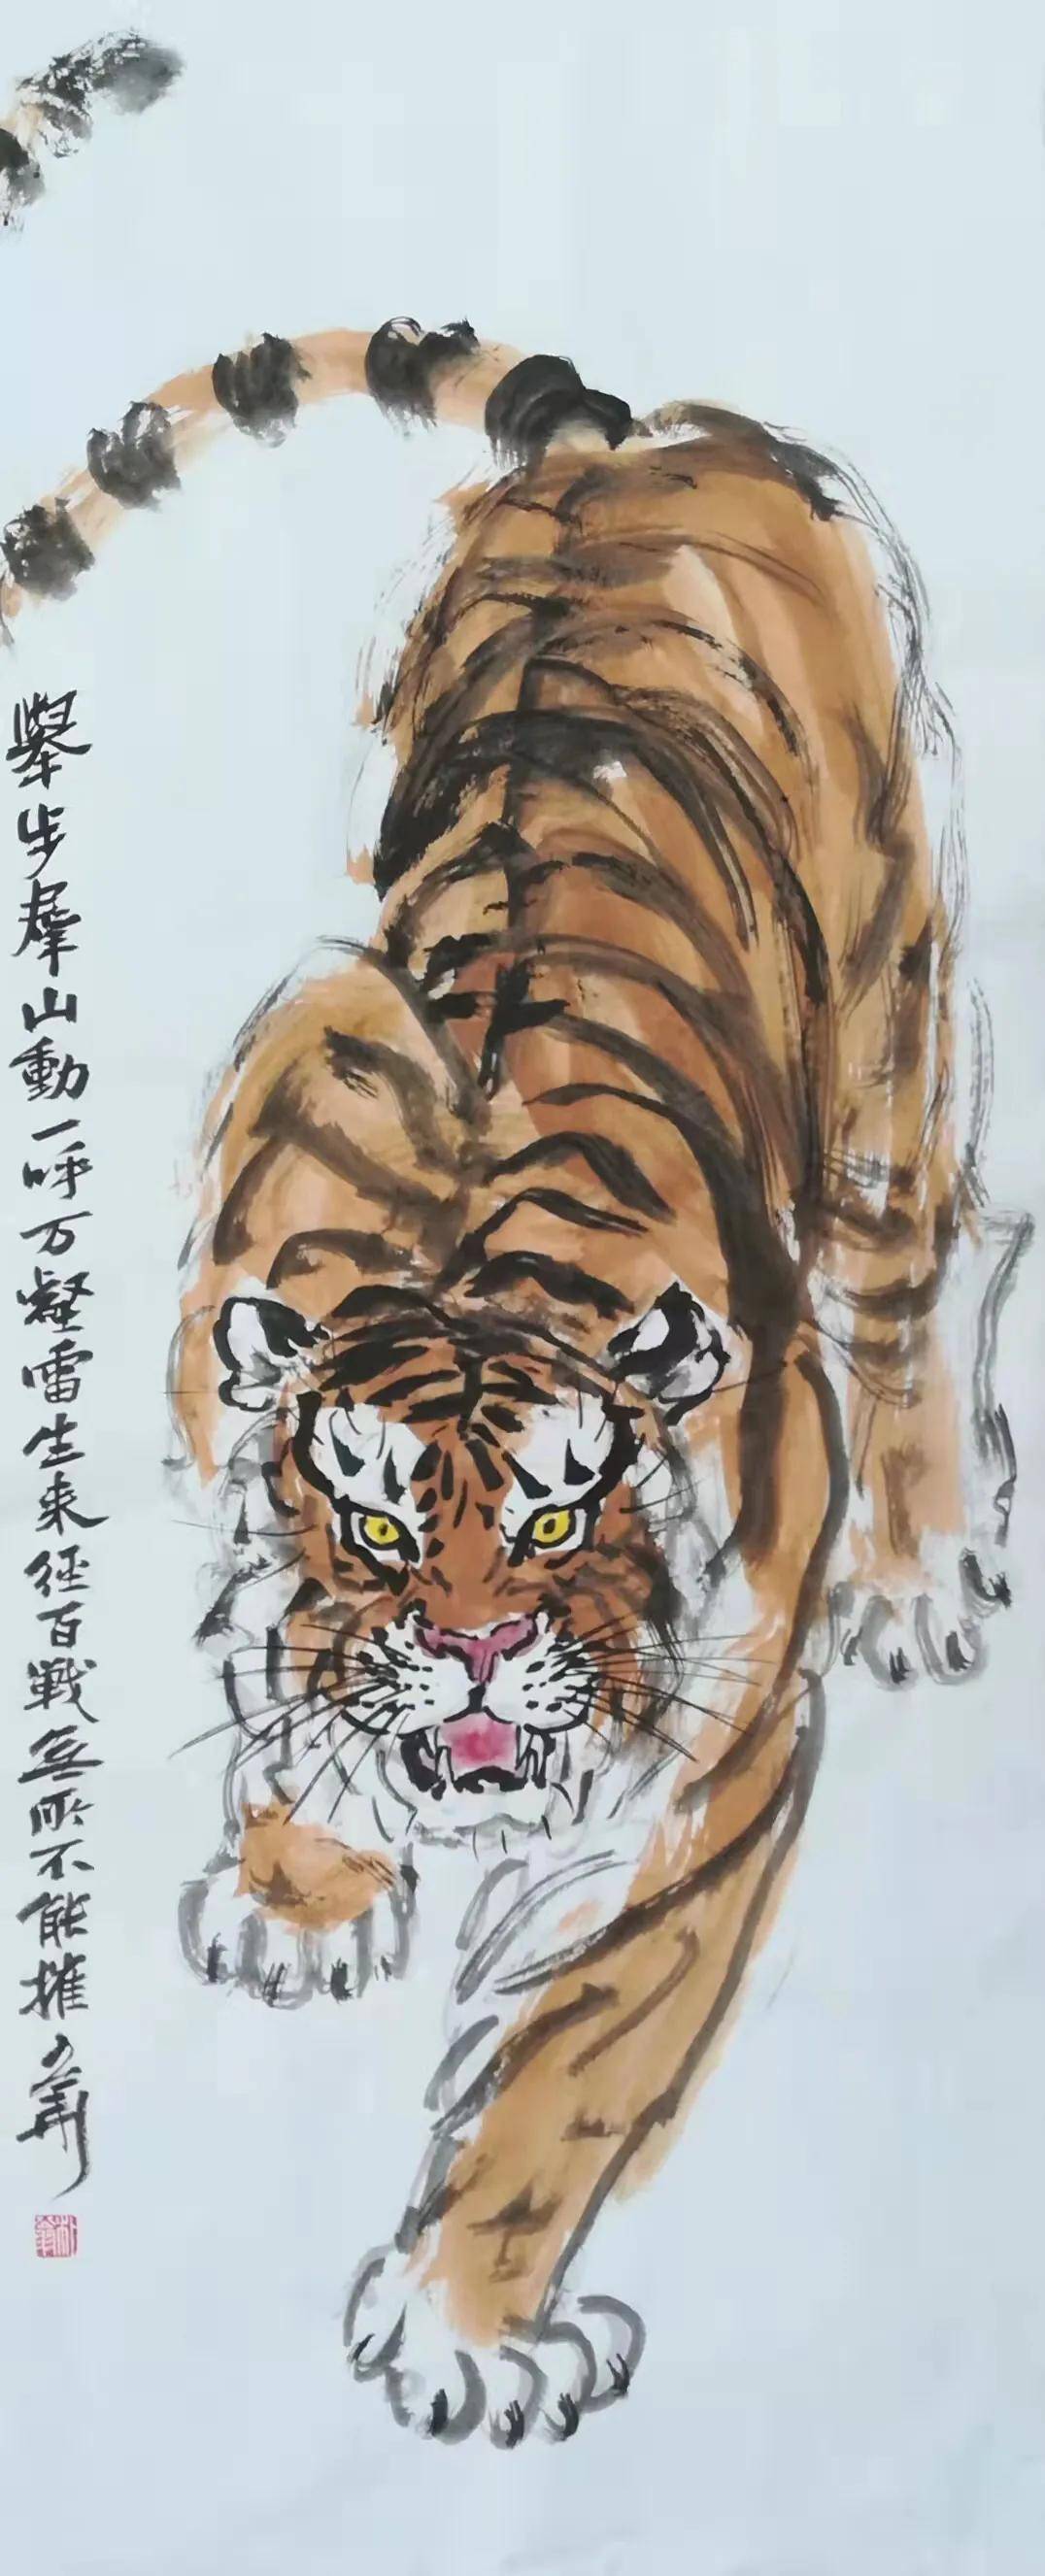 中国画丨重庆丨熊少华虎年画虎